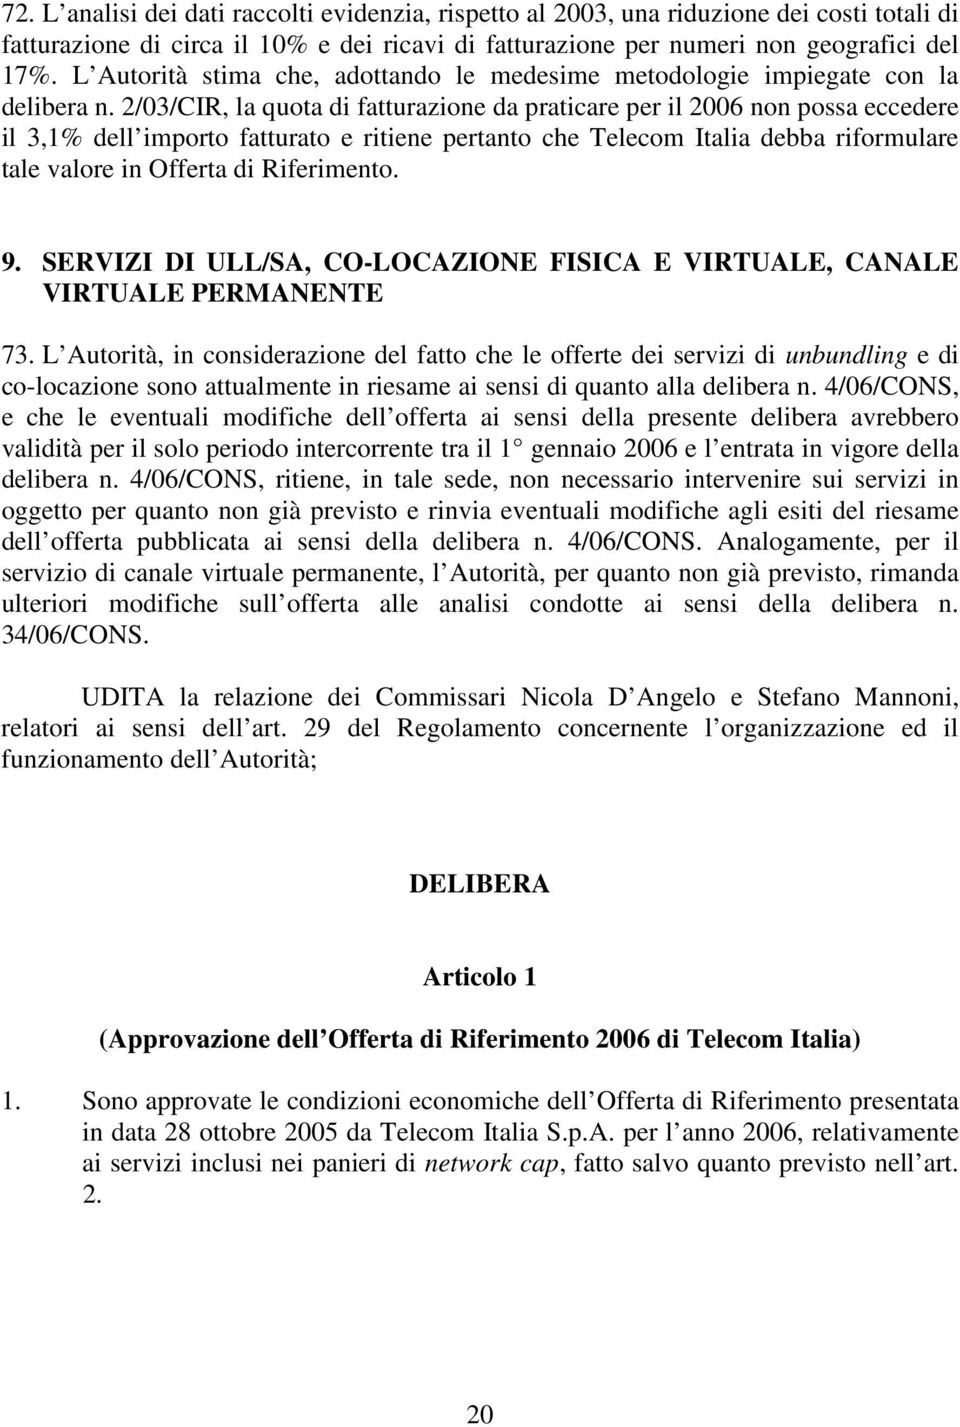 2/03/CIR, la quota di fatturazione da praticare per il 2006 non possa eccedere il 3,1% dell importo fatturato e ritiene pertanto che Telecom Italia debba riformulare tale valore in Offerta di